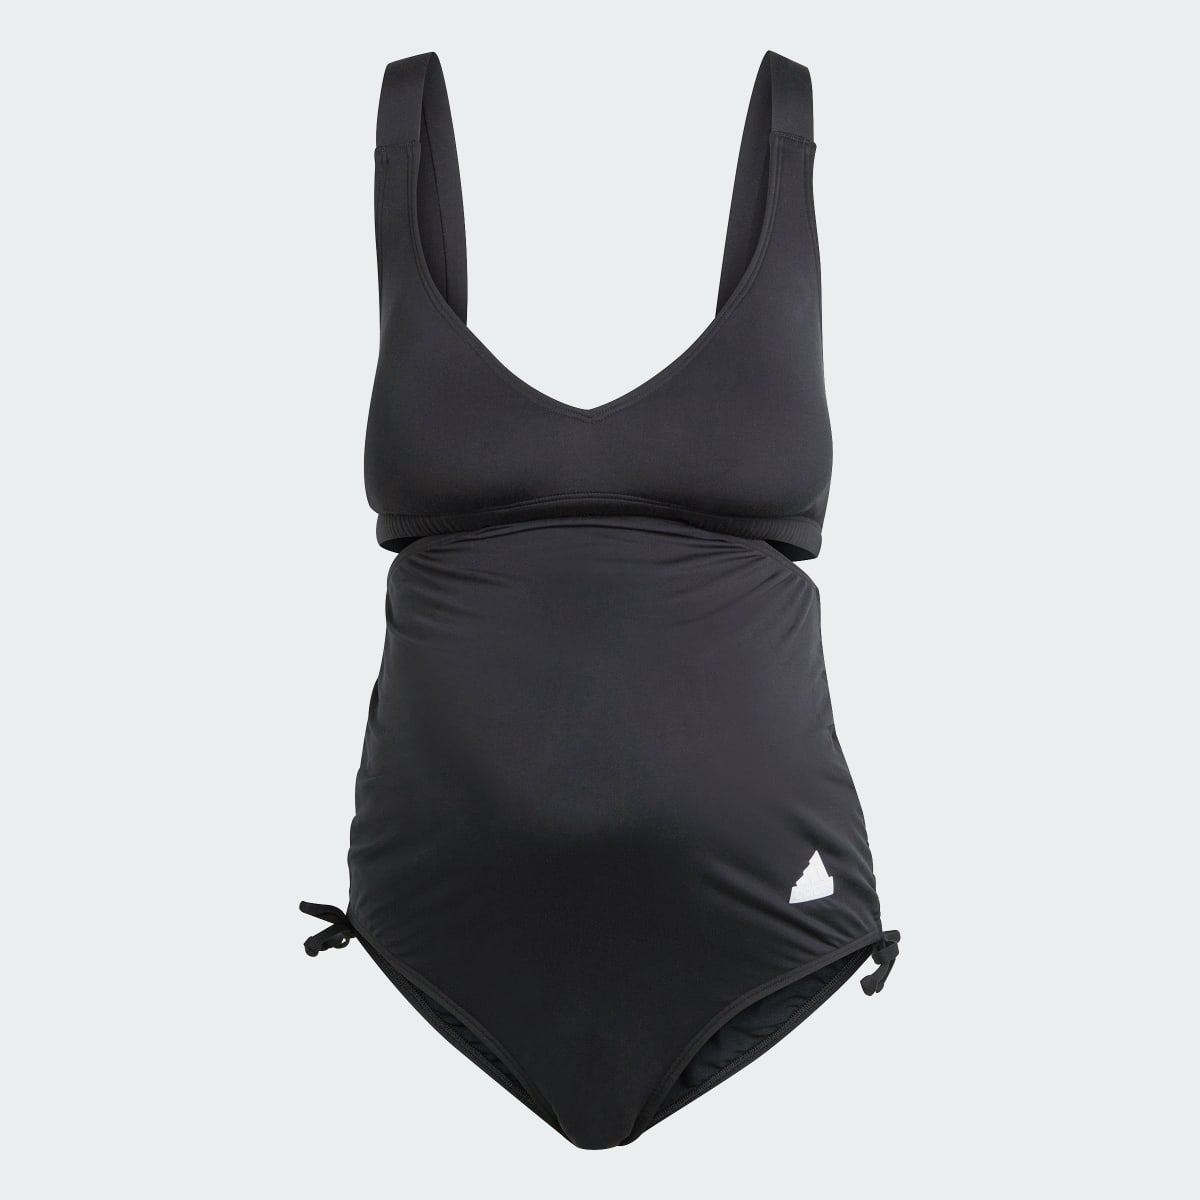 Adidas Iconisea Maternity Swimsuit. 4